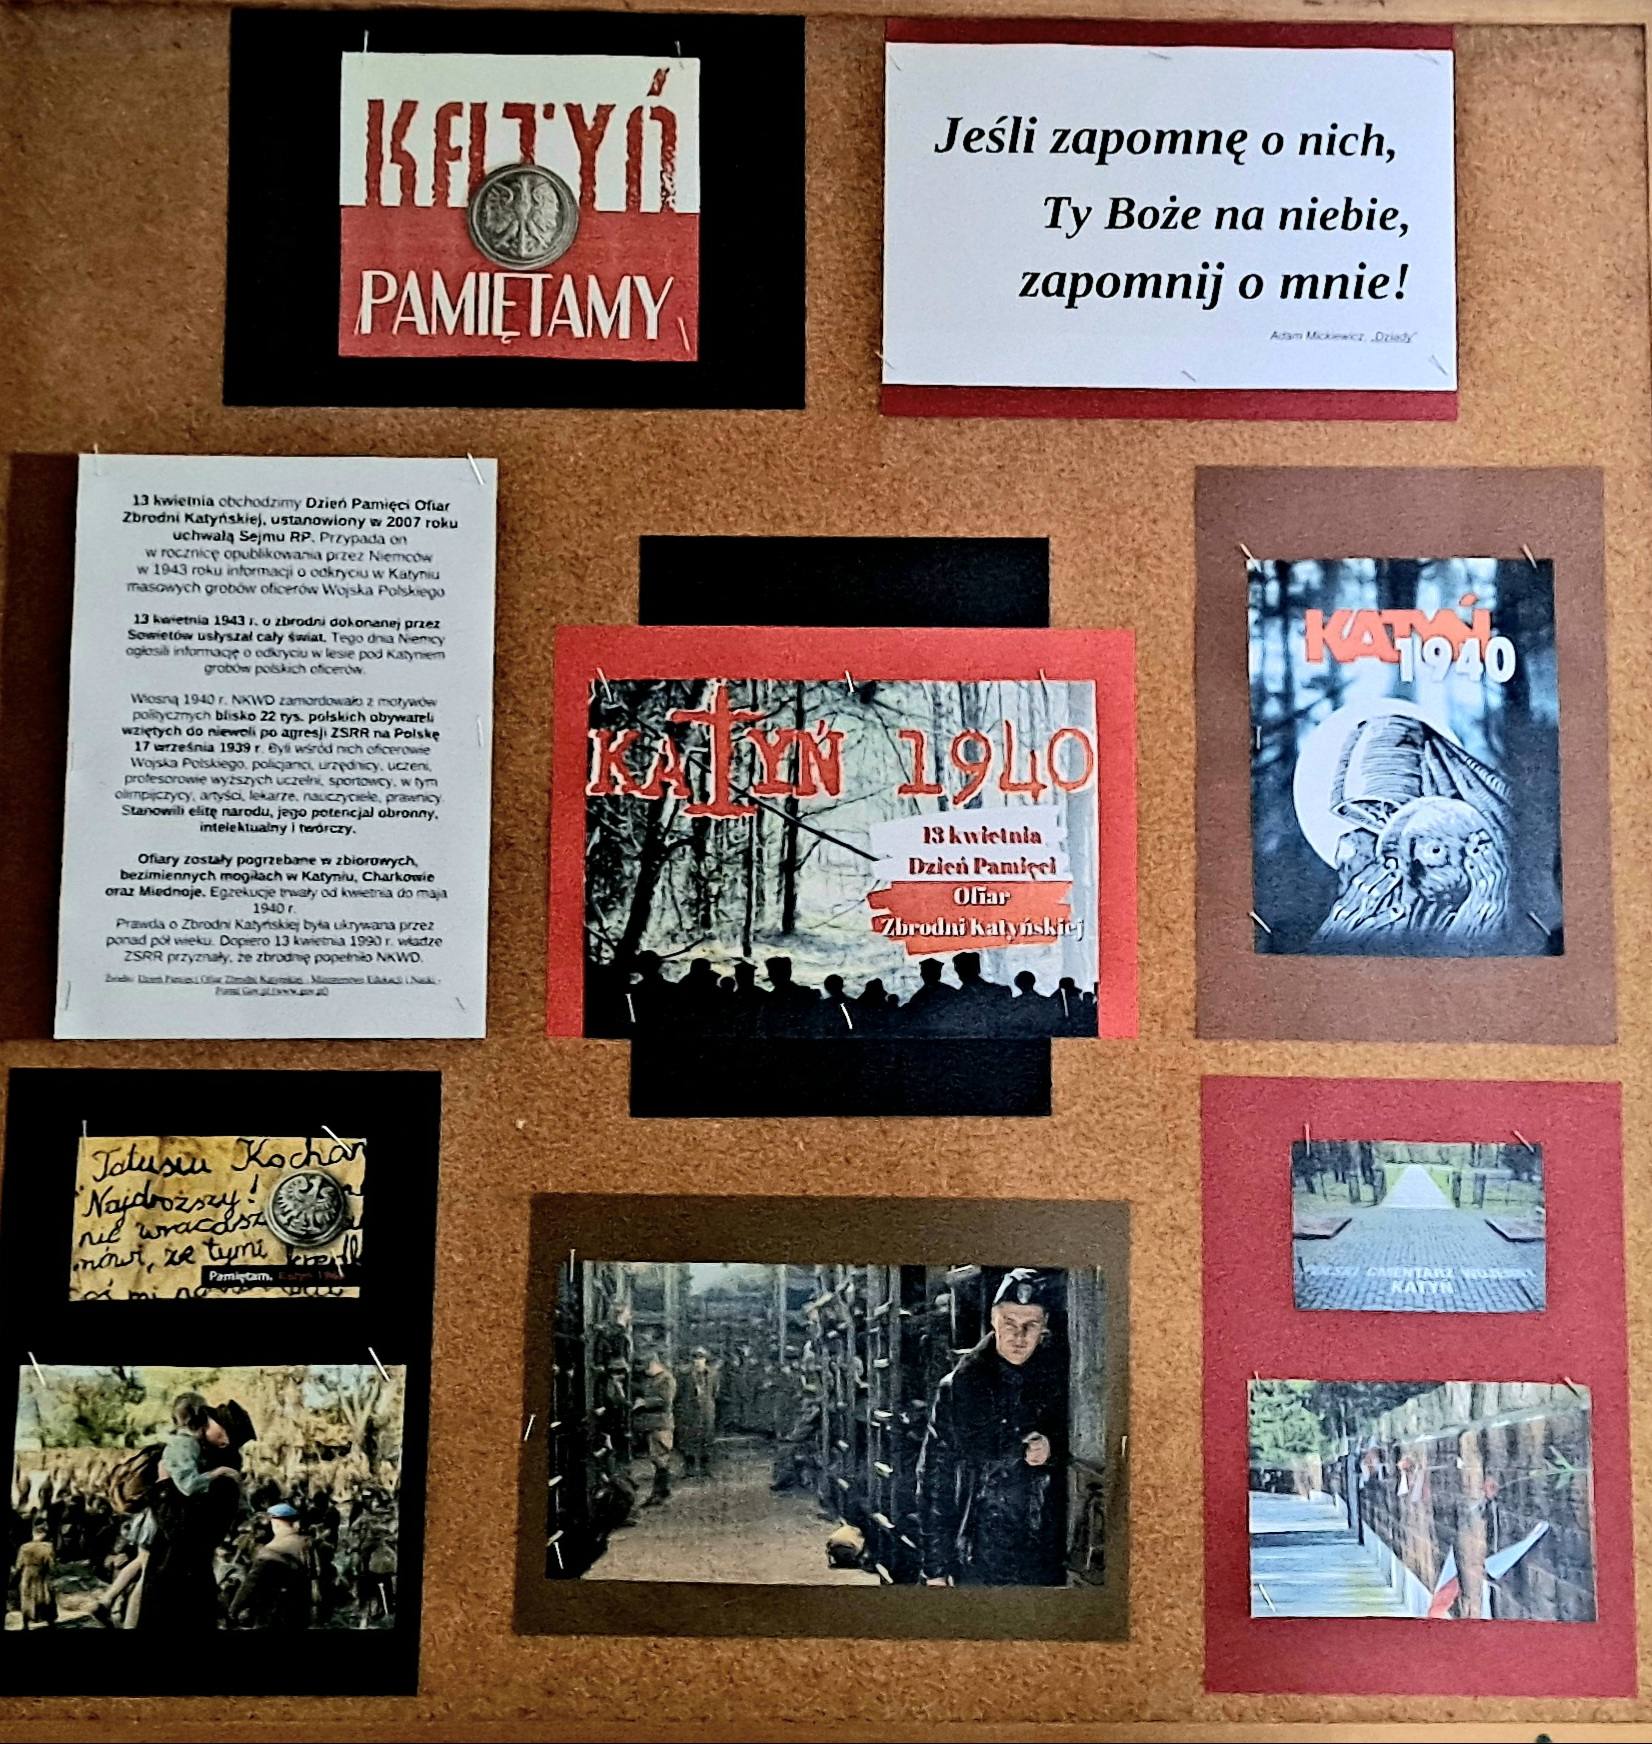 Gazetka ścienna "Katyń - pamiętamy" - grafikai tekst informacyjny na czerwonym, czarnym i brązowym tle